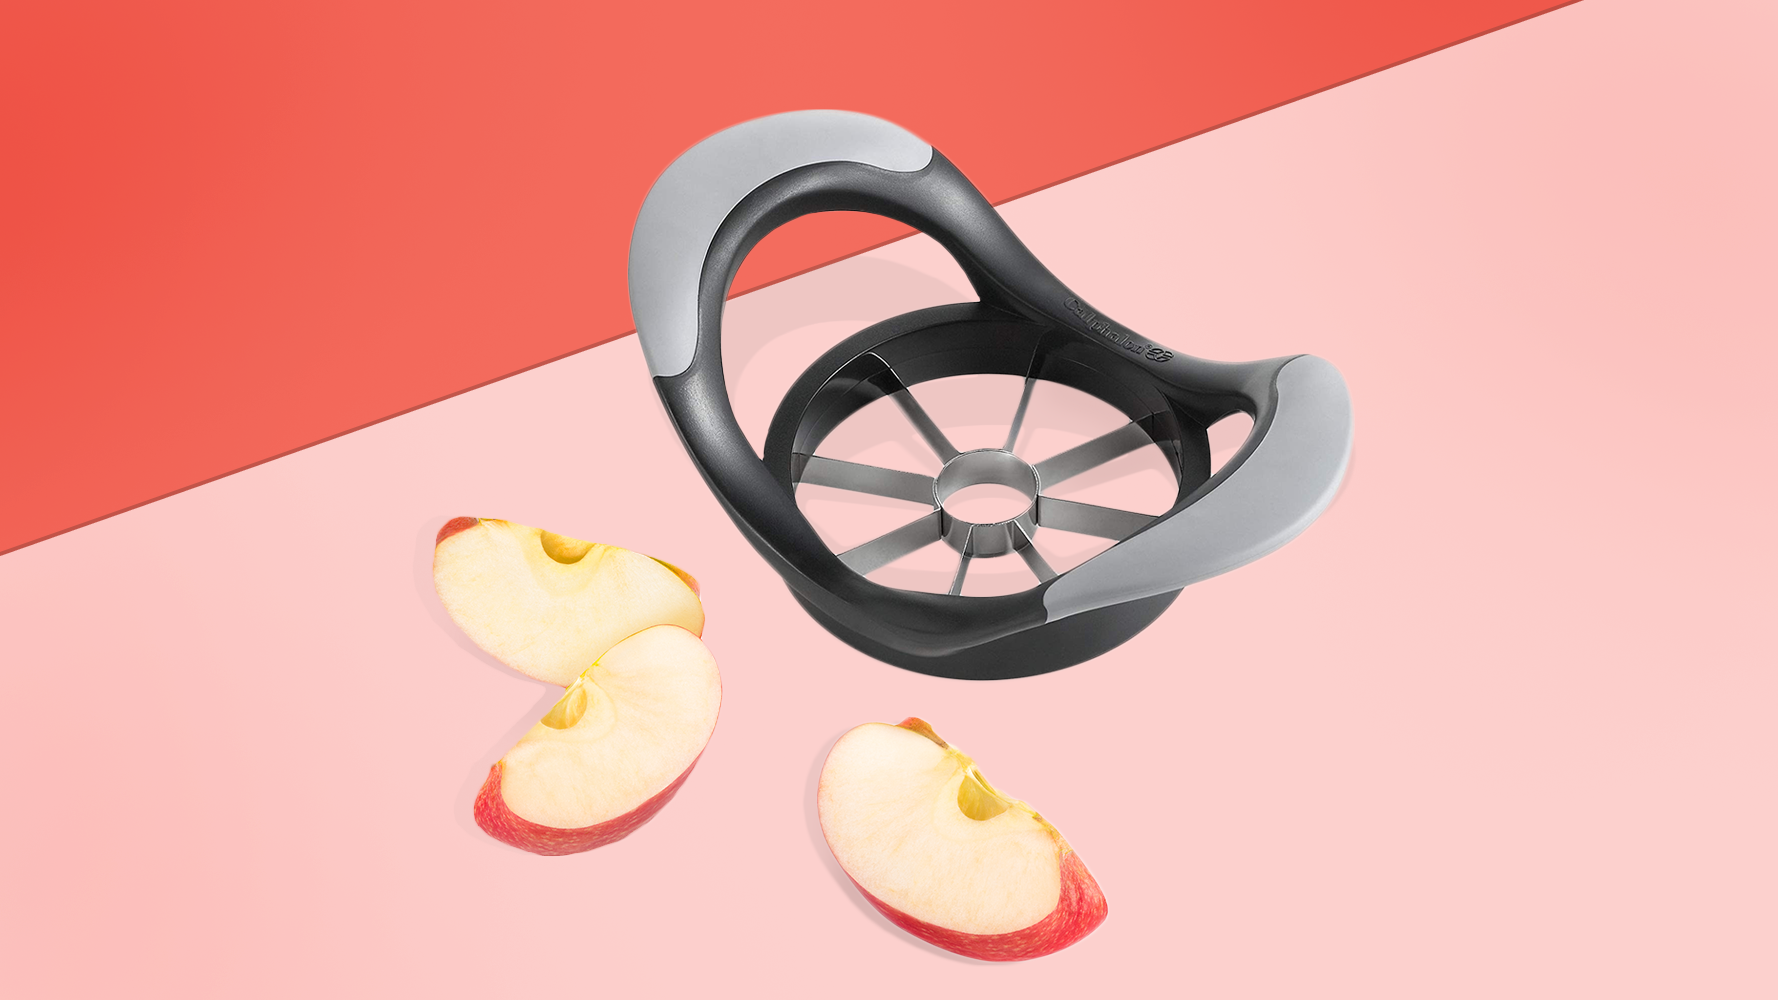 apple corer and slicer